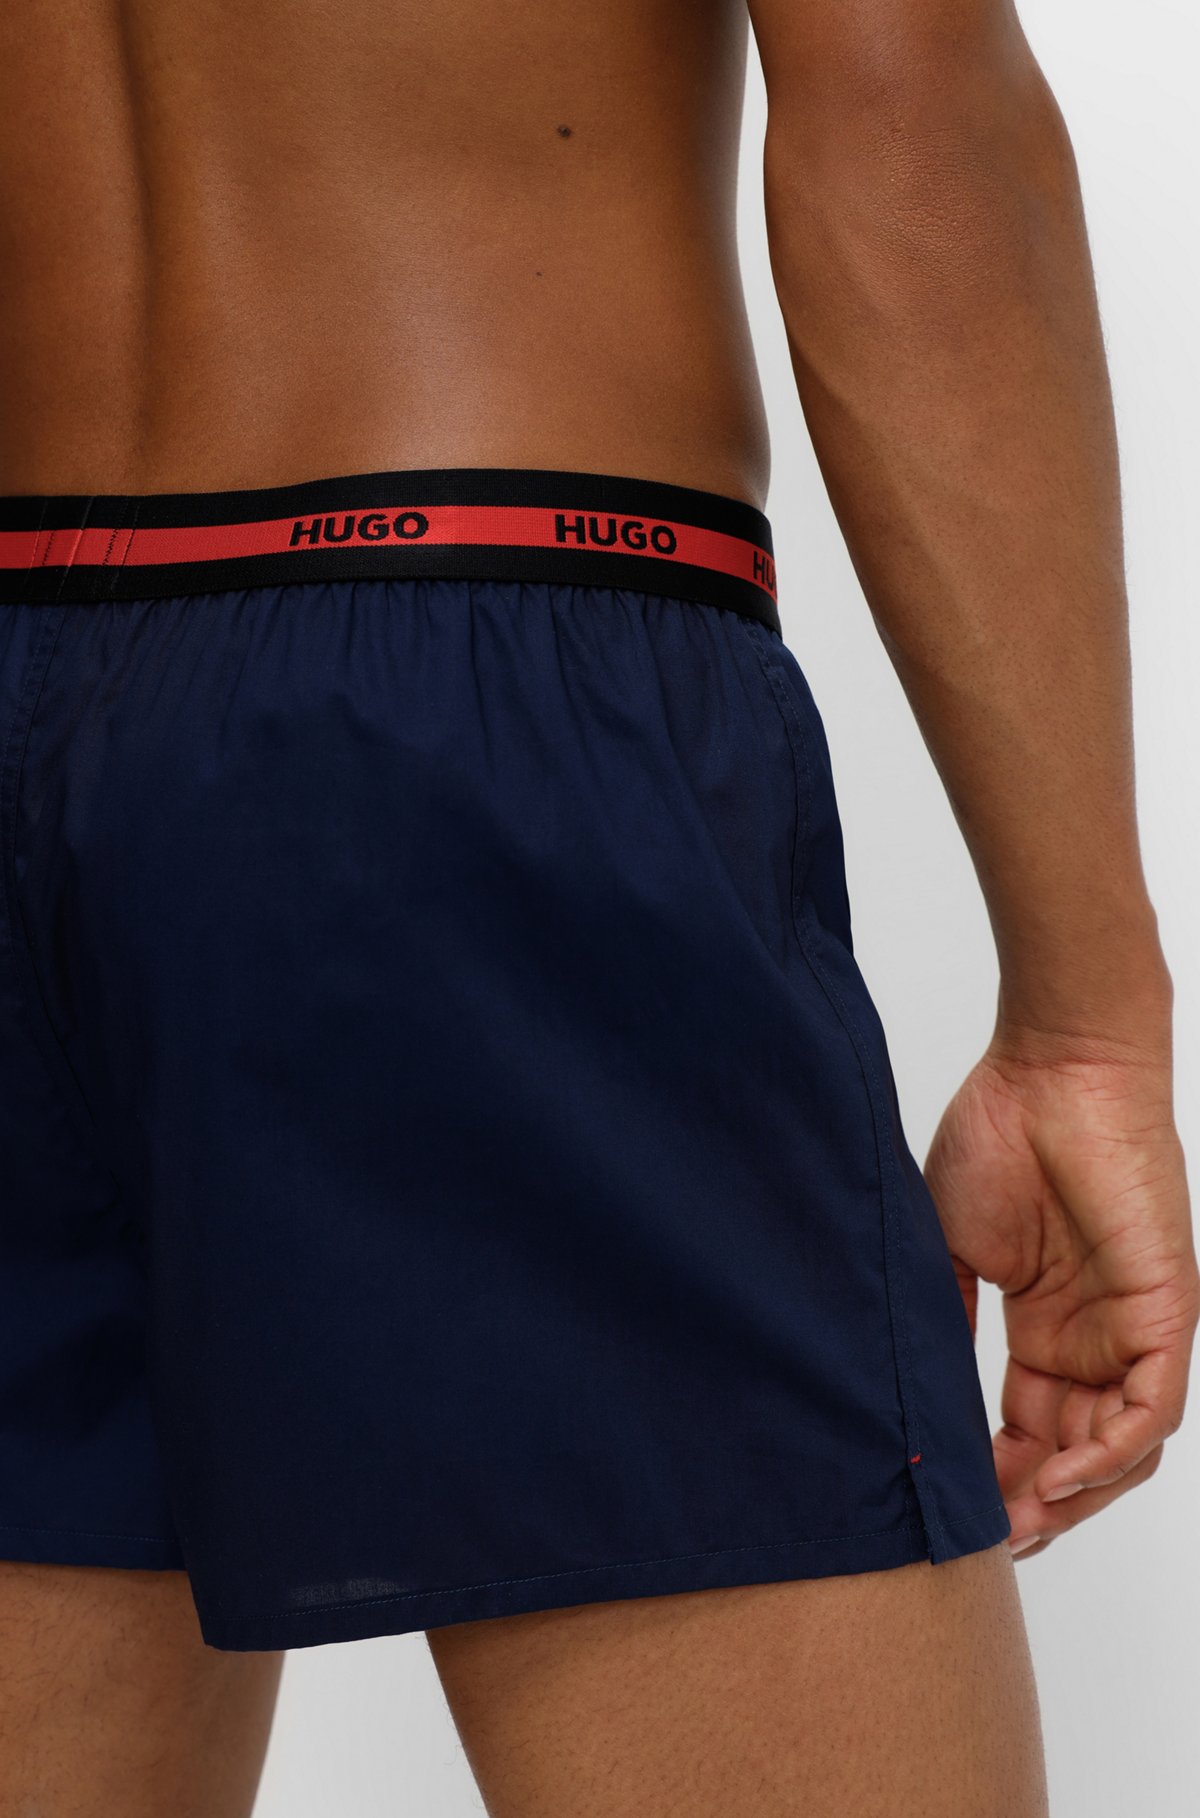 Zweier-Pack Boxershorts aus Baumwolle mit Logo am Bund, Rot/Dunkelblau